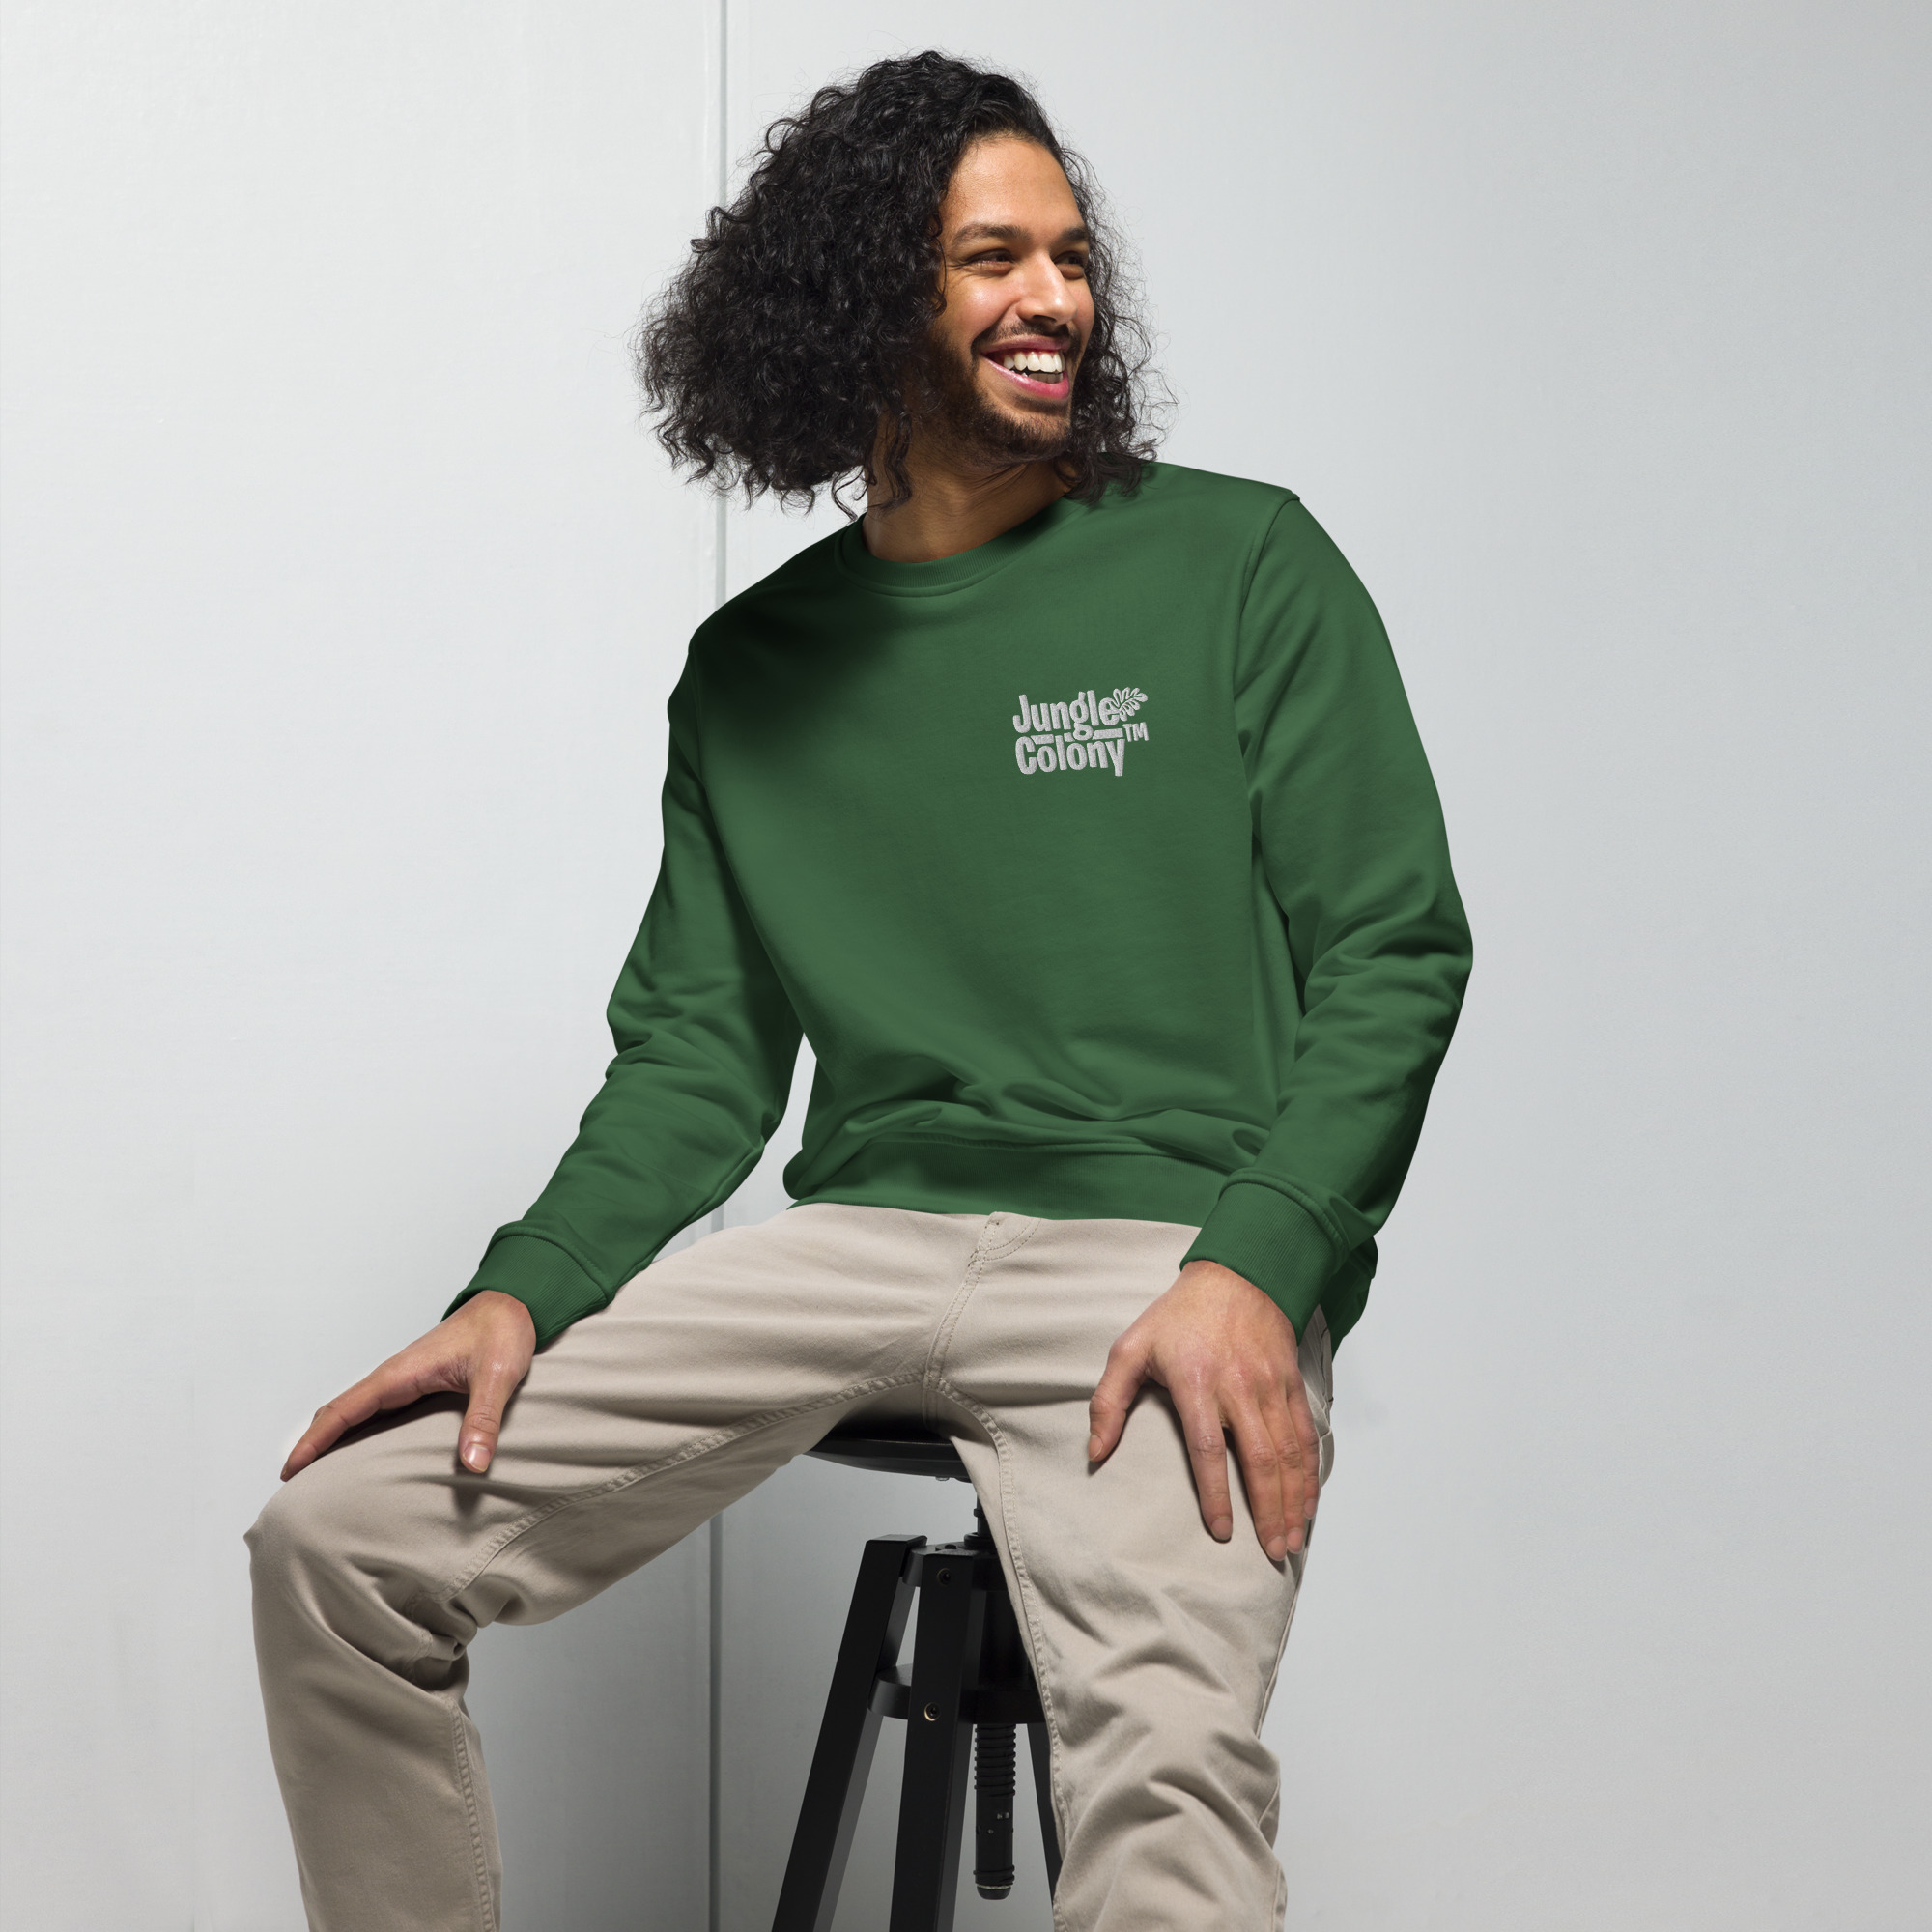 unisex-organic-sweatshirt-bottle-green-front-64200a783a9d3.jpg